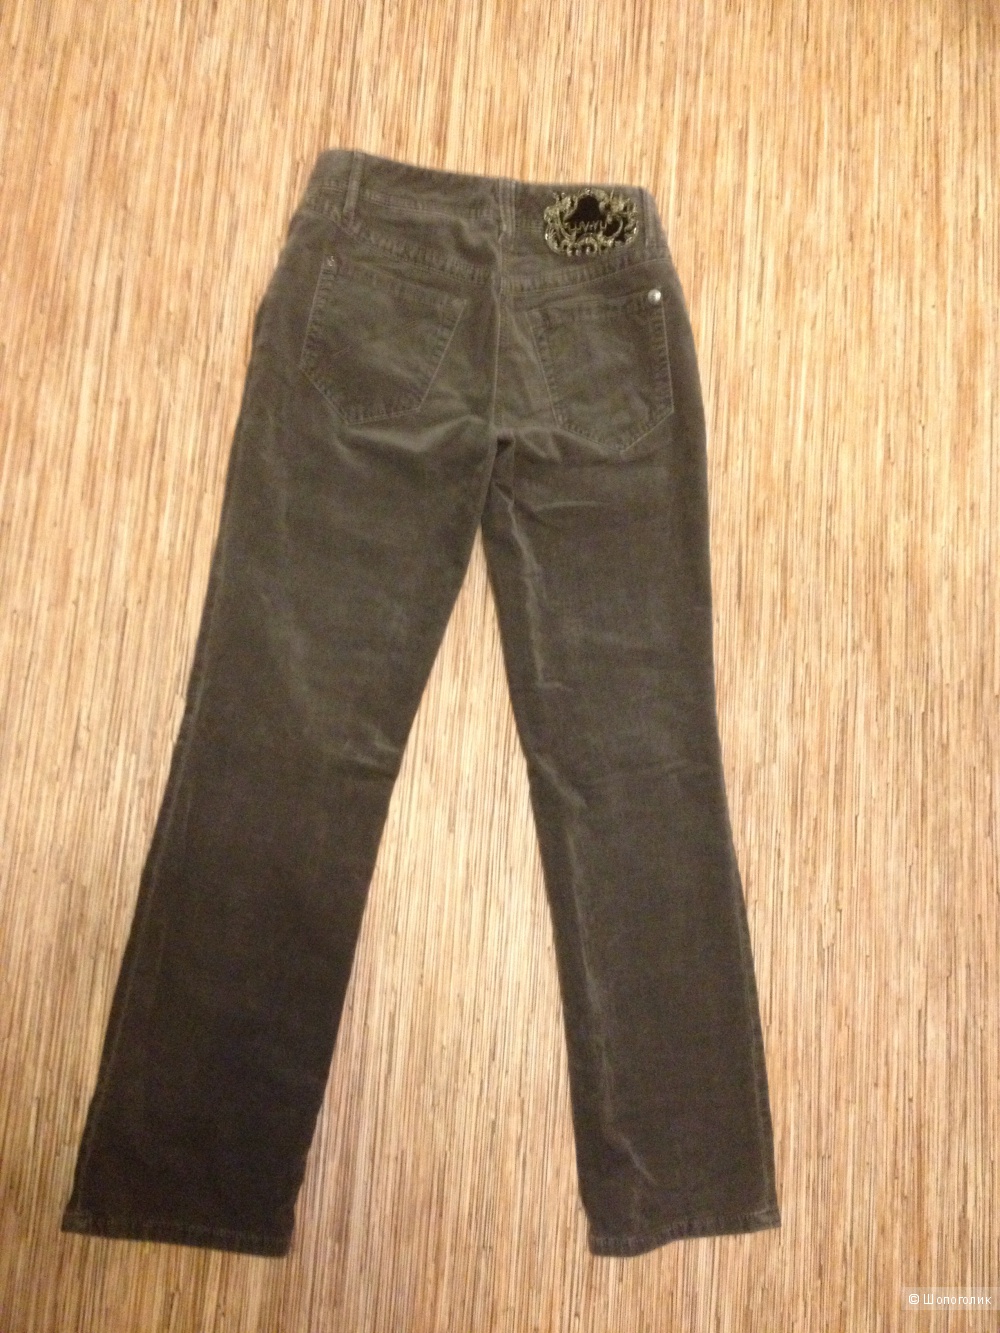 Бархатные серые джинсы gardeur, с сайта Alba Moda, размер 34К, б/у аккуратно